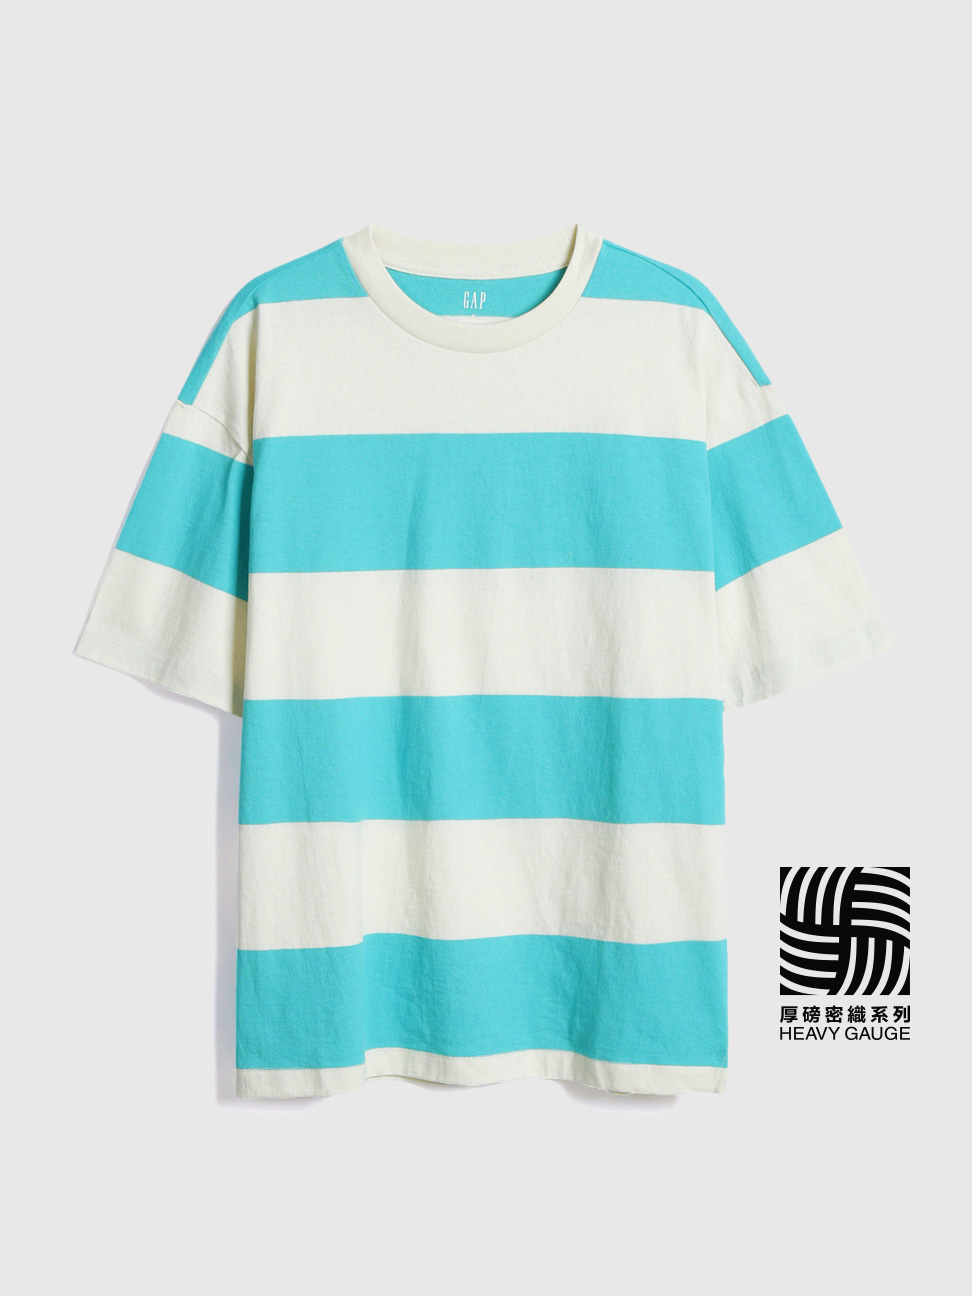 男裝|舒適圓領條紋短袖T恤-藍白條紋